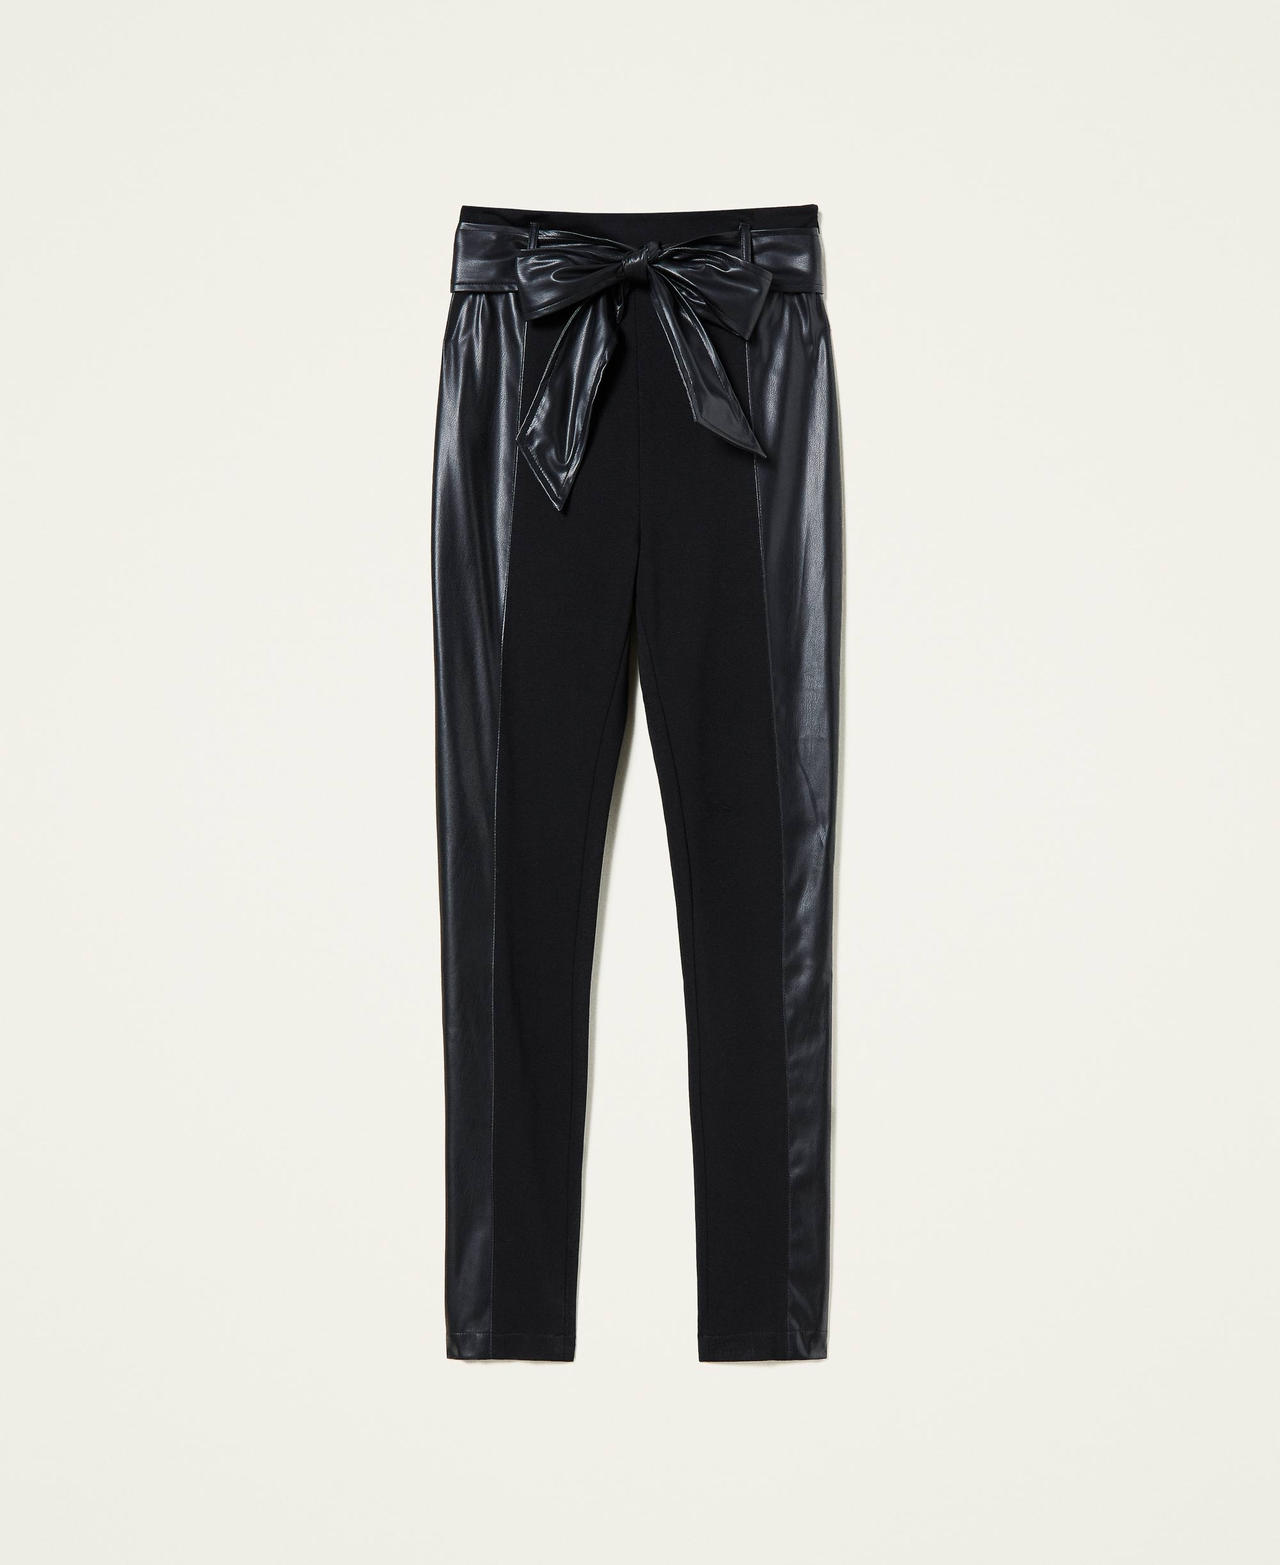 Pantalon skinny taille haute Noir Femme 212AT2392-0S